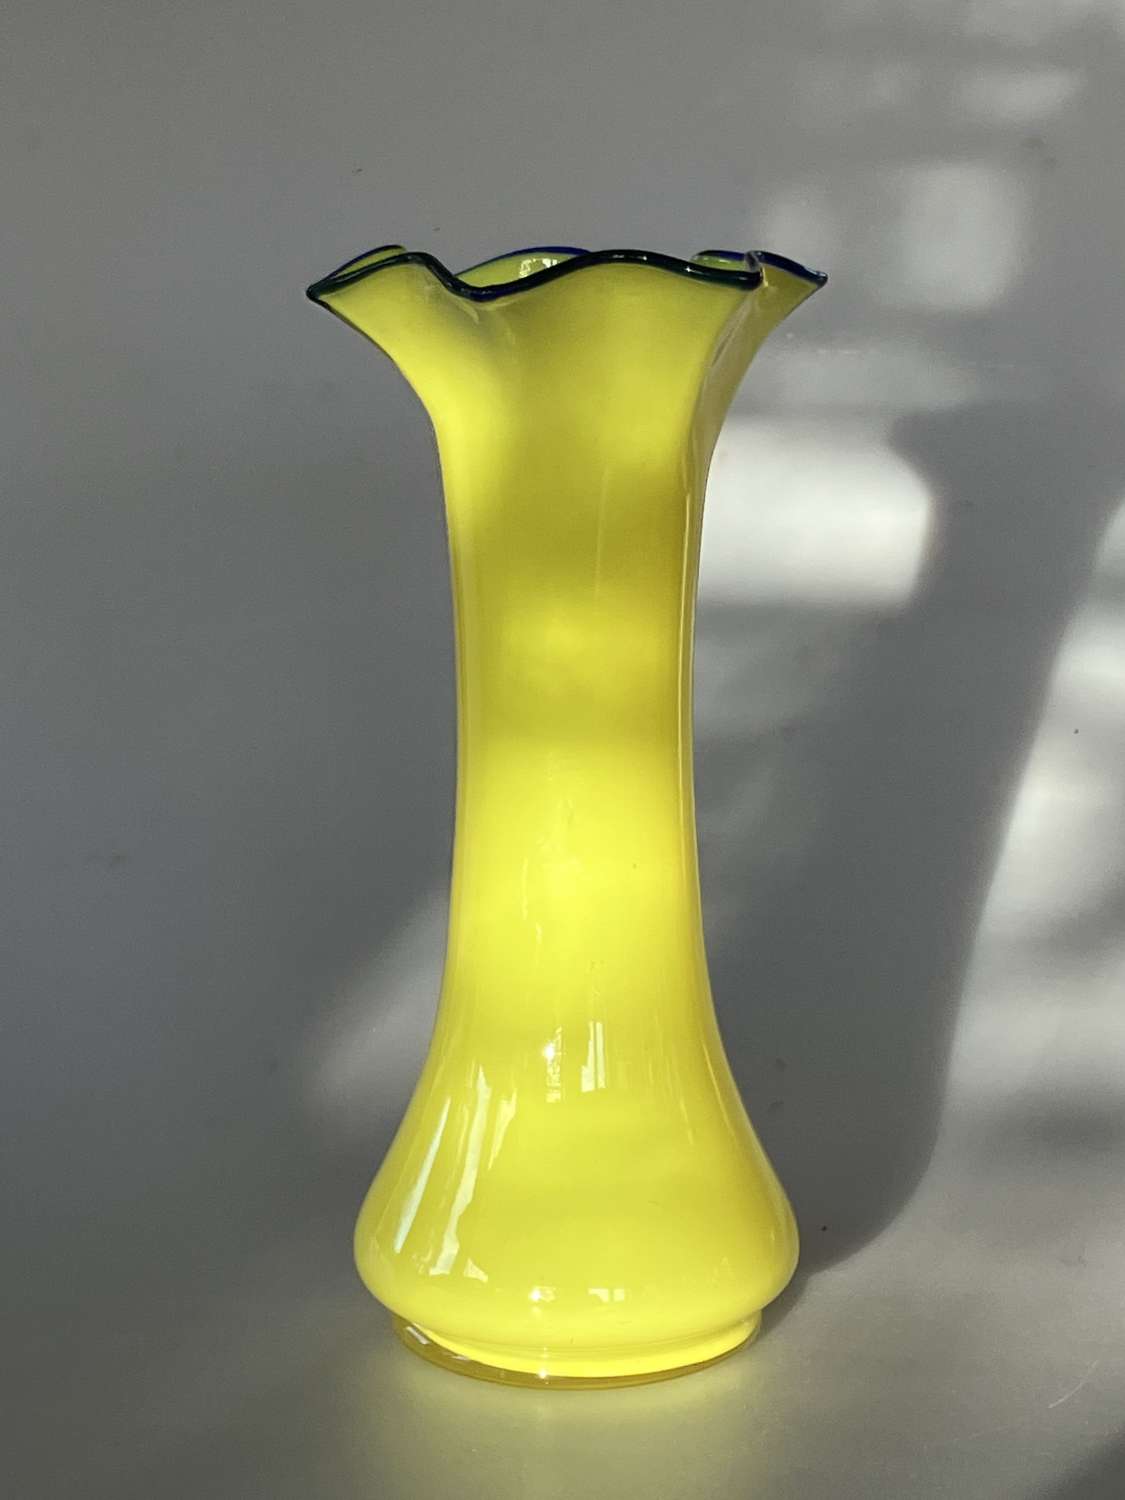 Czech/Bohemian psy vase in yellow